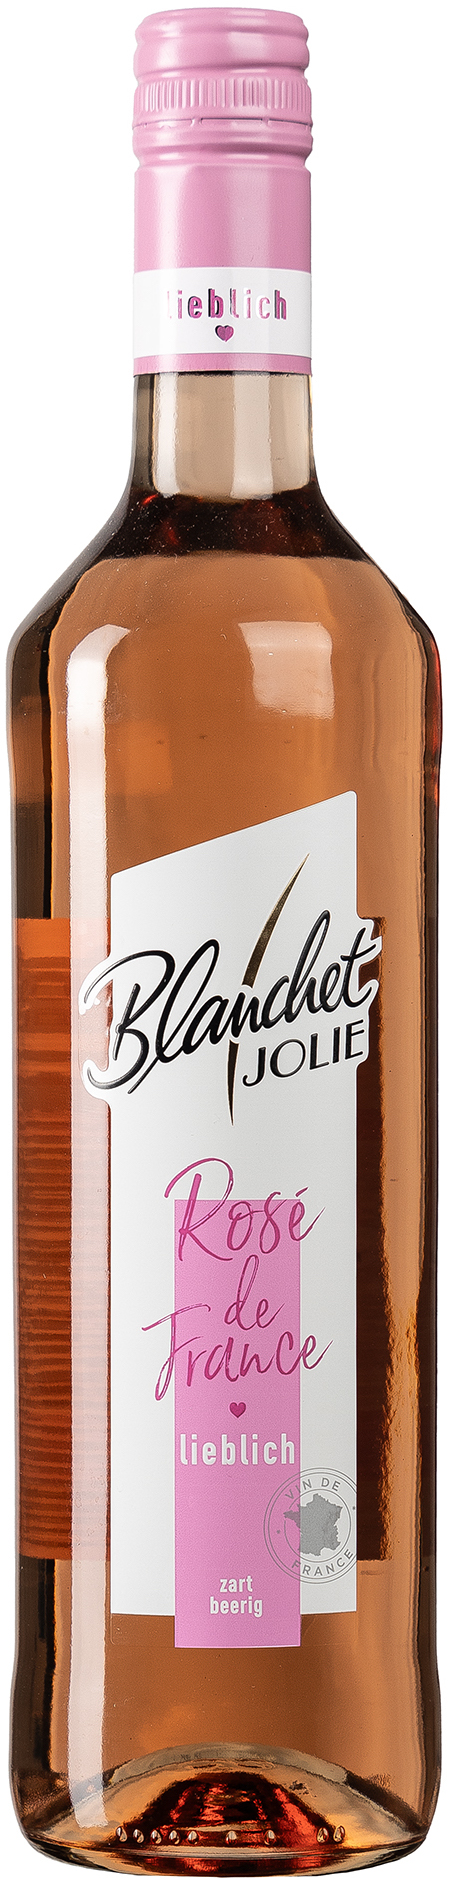 Blanchet Jolie Rose de France lieblich 11,5% vol. 0,75L